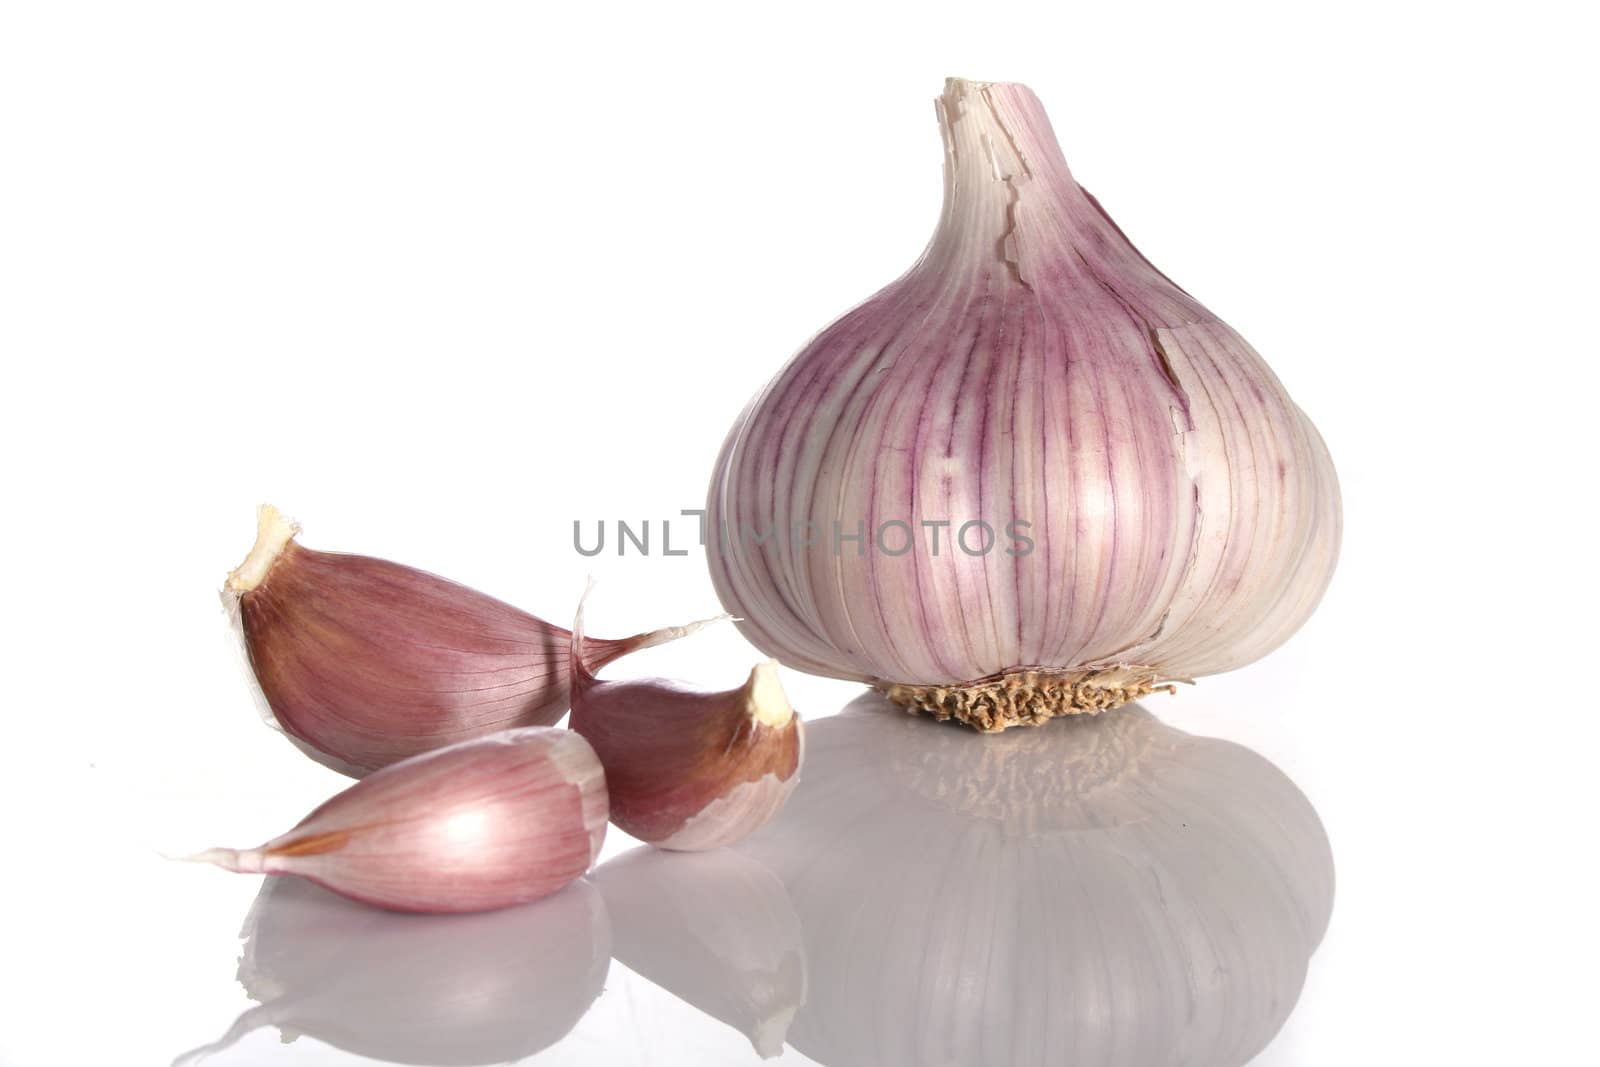 Garlic over a white background by Erdosain